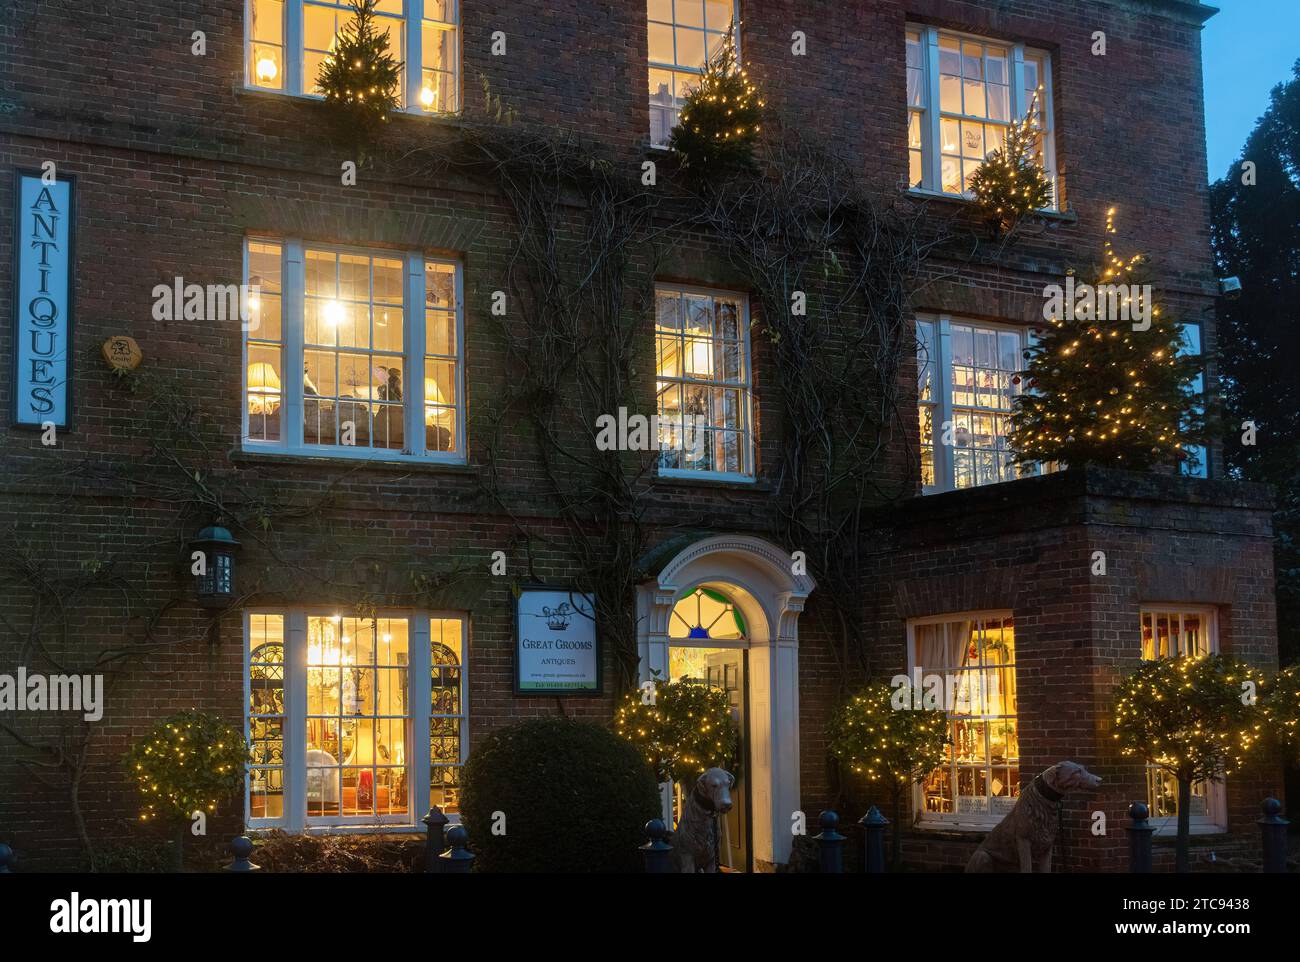 Great grooms antiques showrooms dans une grande maison, un magasin d'antiquités à Hungerford, West Berkshire, Angleterre, Royaume-Uni, vue extérieure la nuit à Noël Banque D'Images